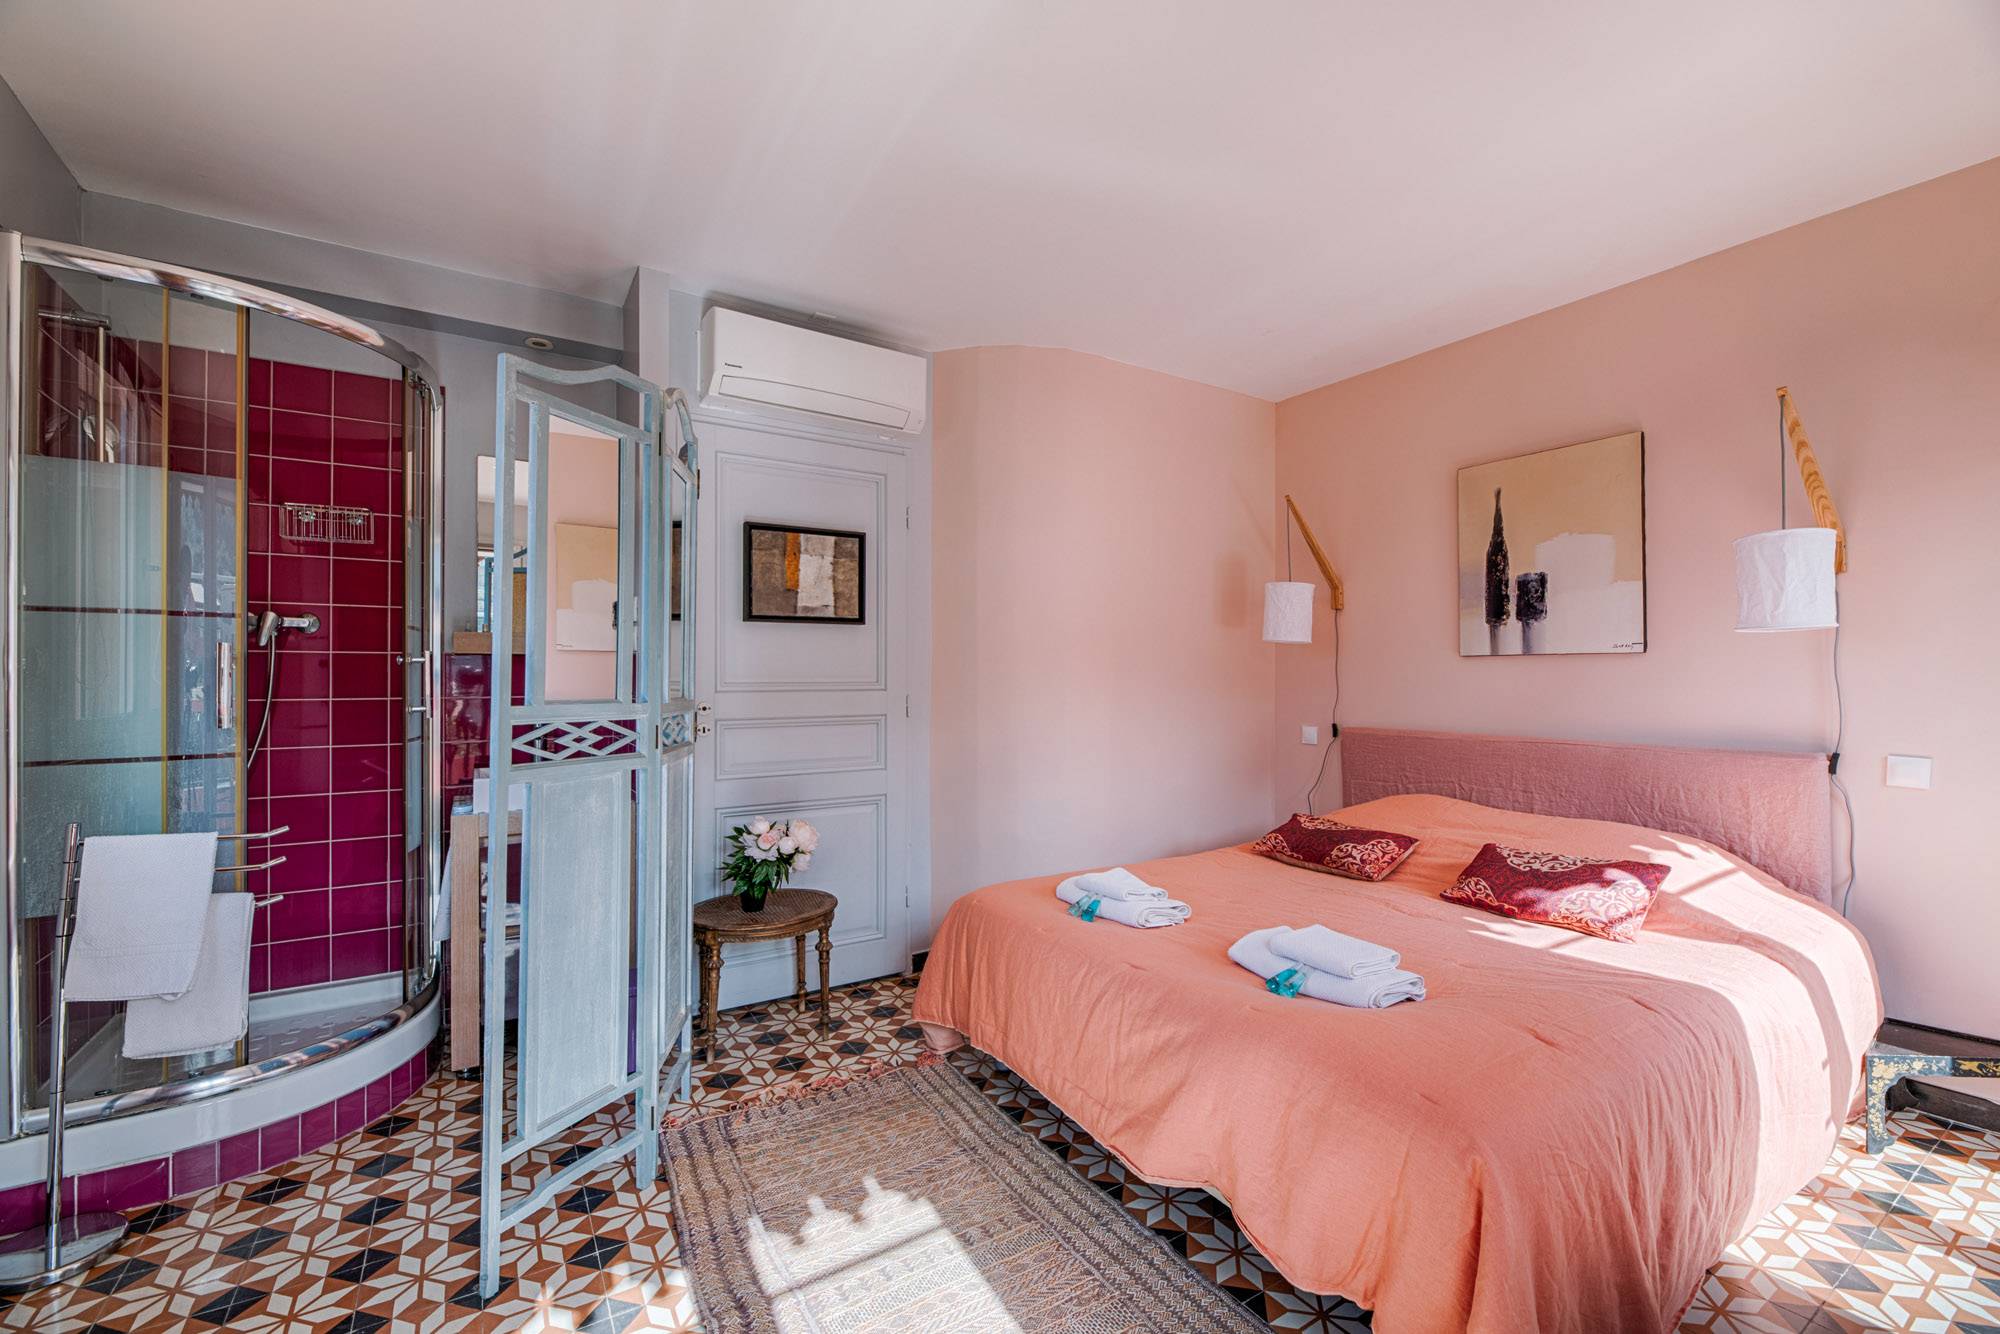 Location chambre d'hôtes Muscade avec terrasse dans une calanque de Marseille